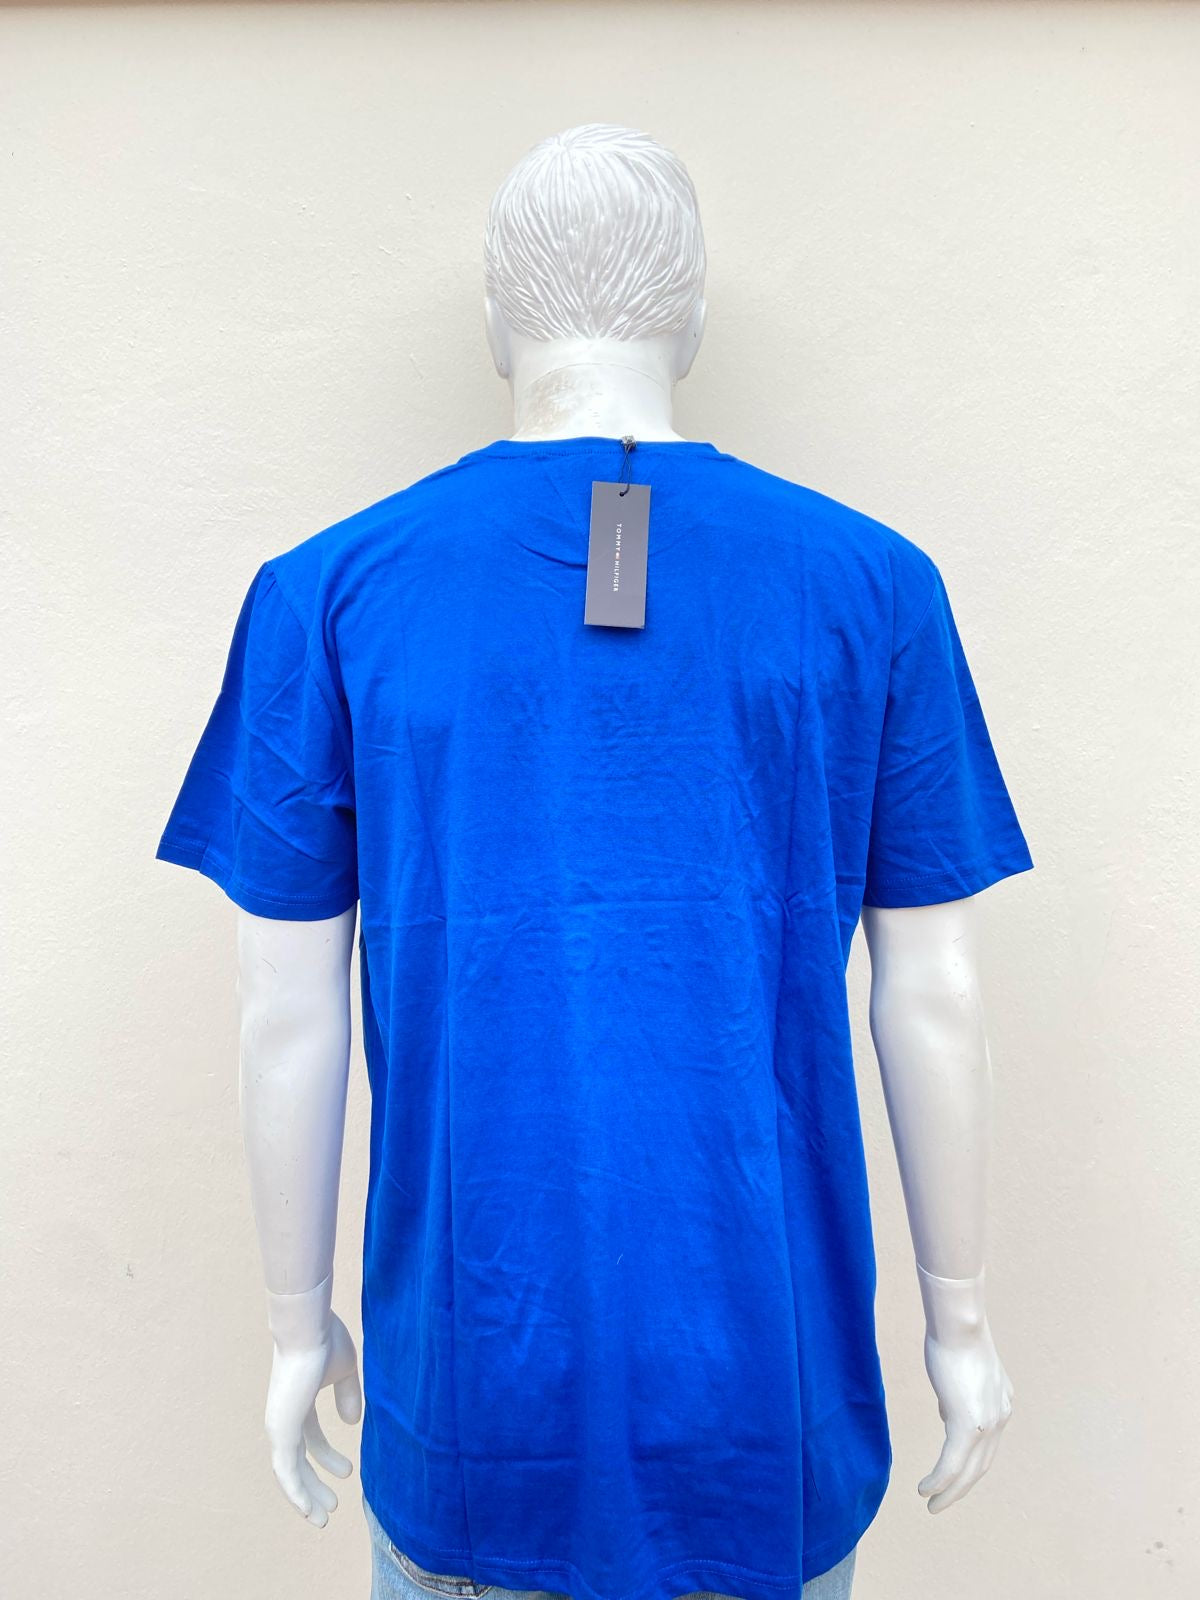 T-shirt Tommy Hilfiger original, azul con letras de la marca en la parte delantera.